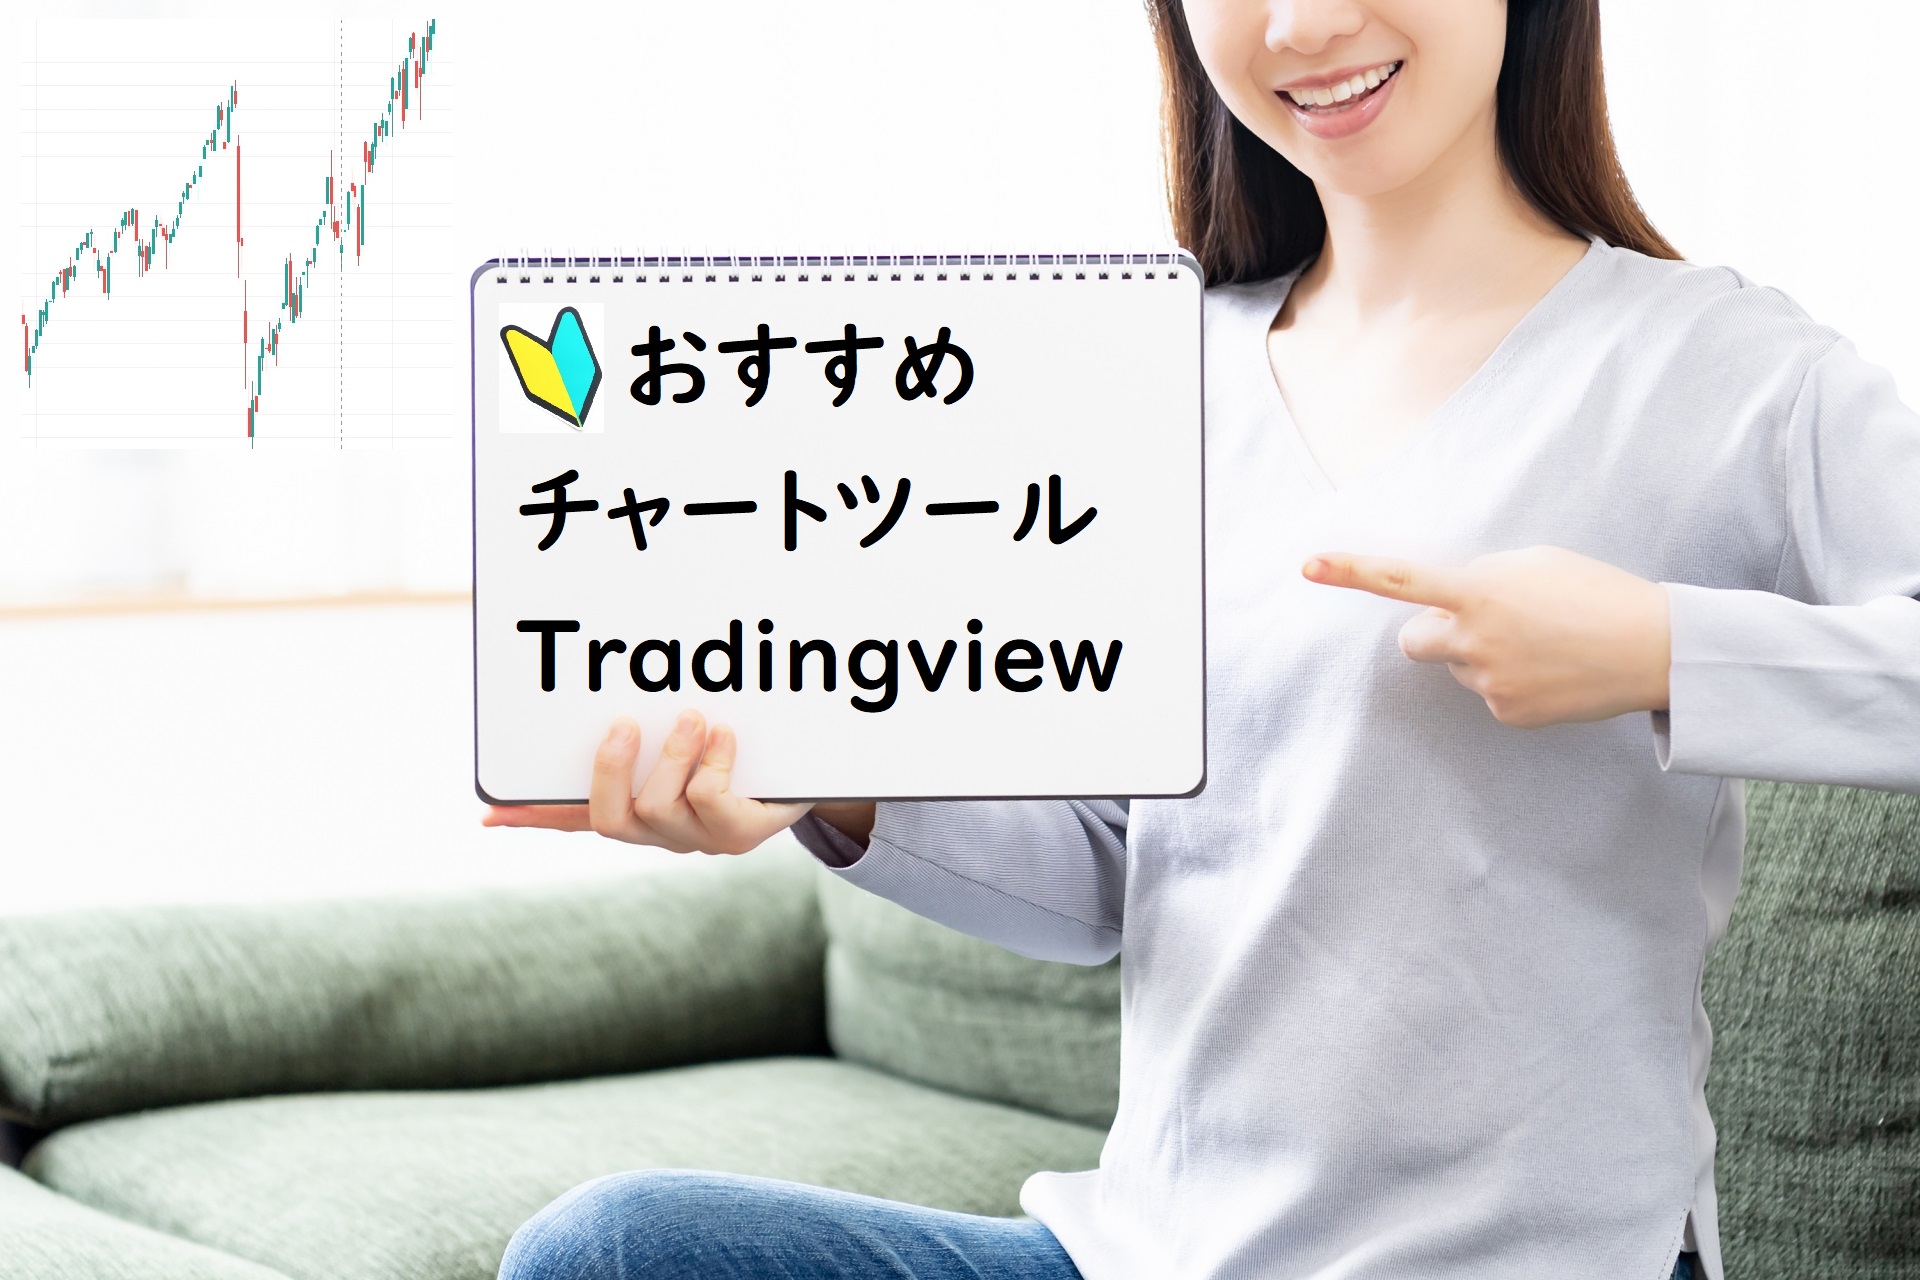 Tradingview紹介記事アイキャッチ画像